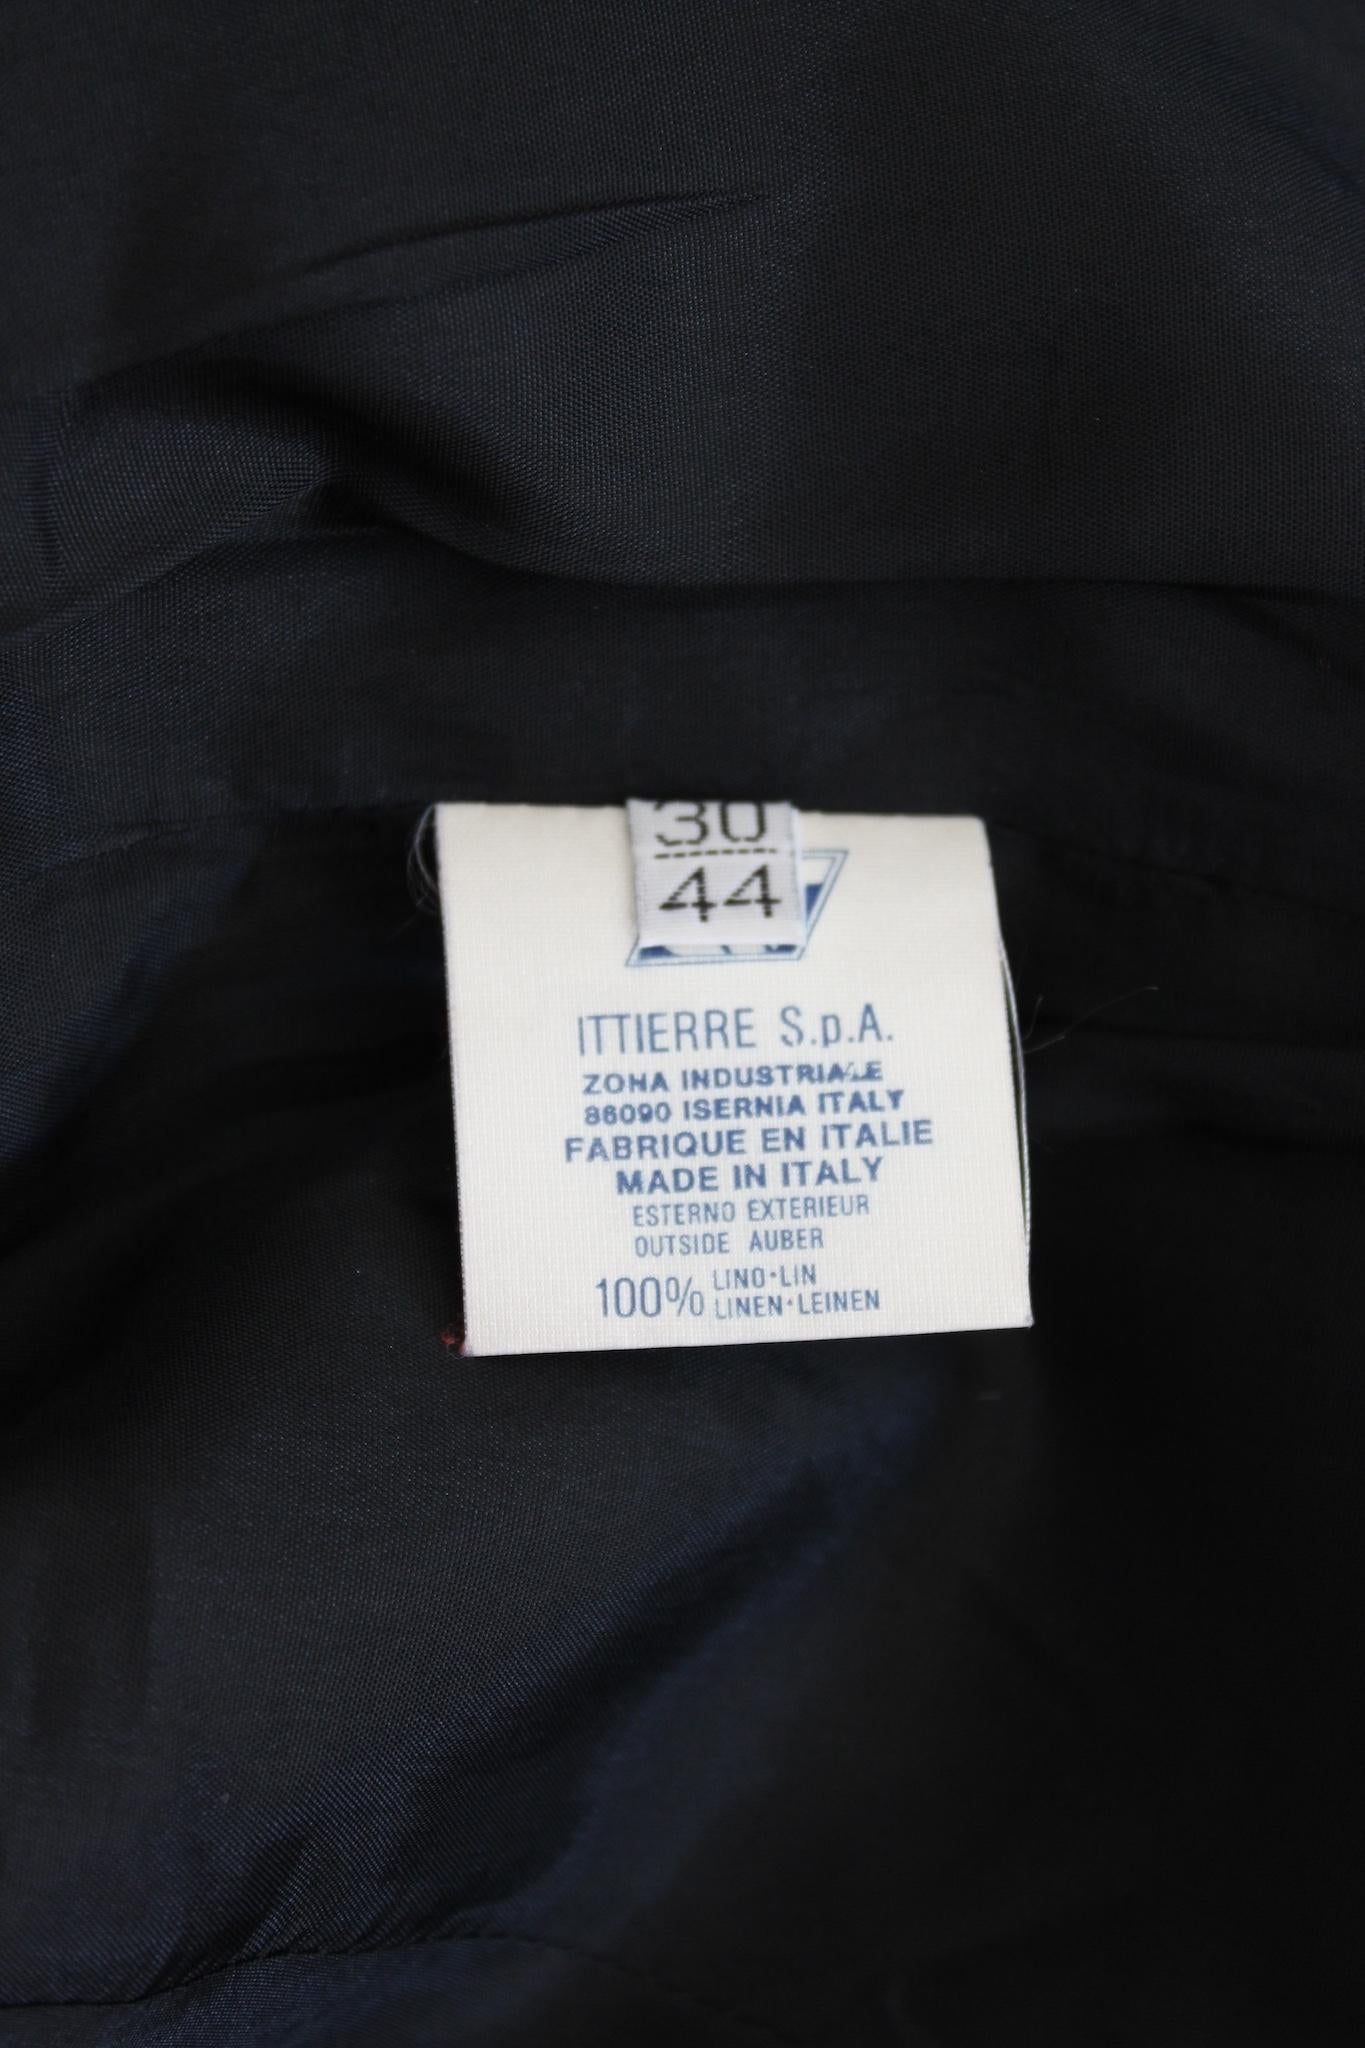 Versus by Gianni Versace Black Linen Short Bolero Jacket 1990s 3